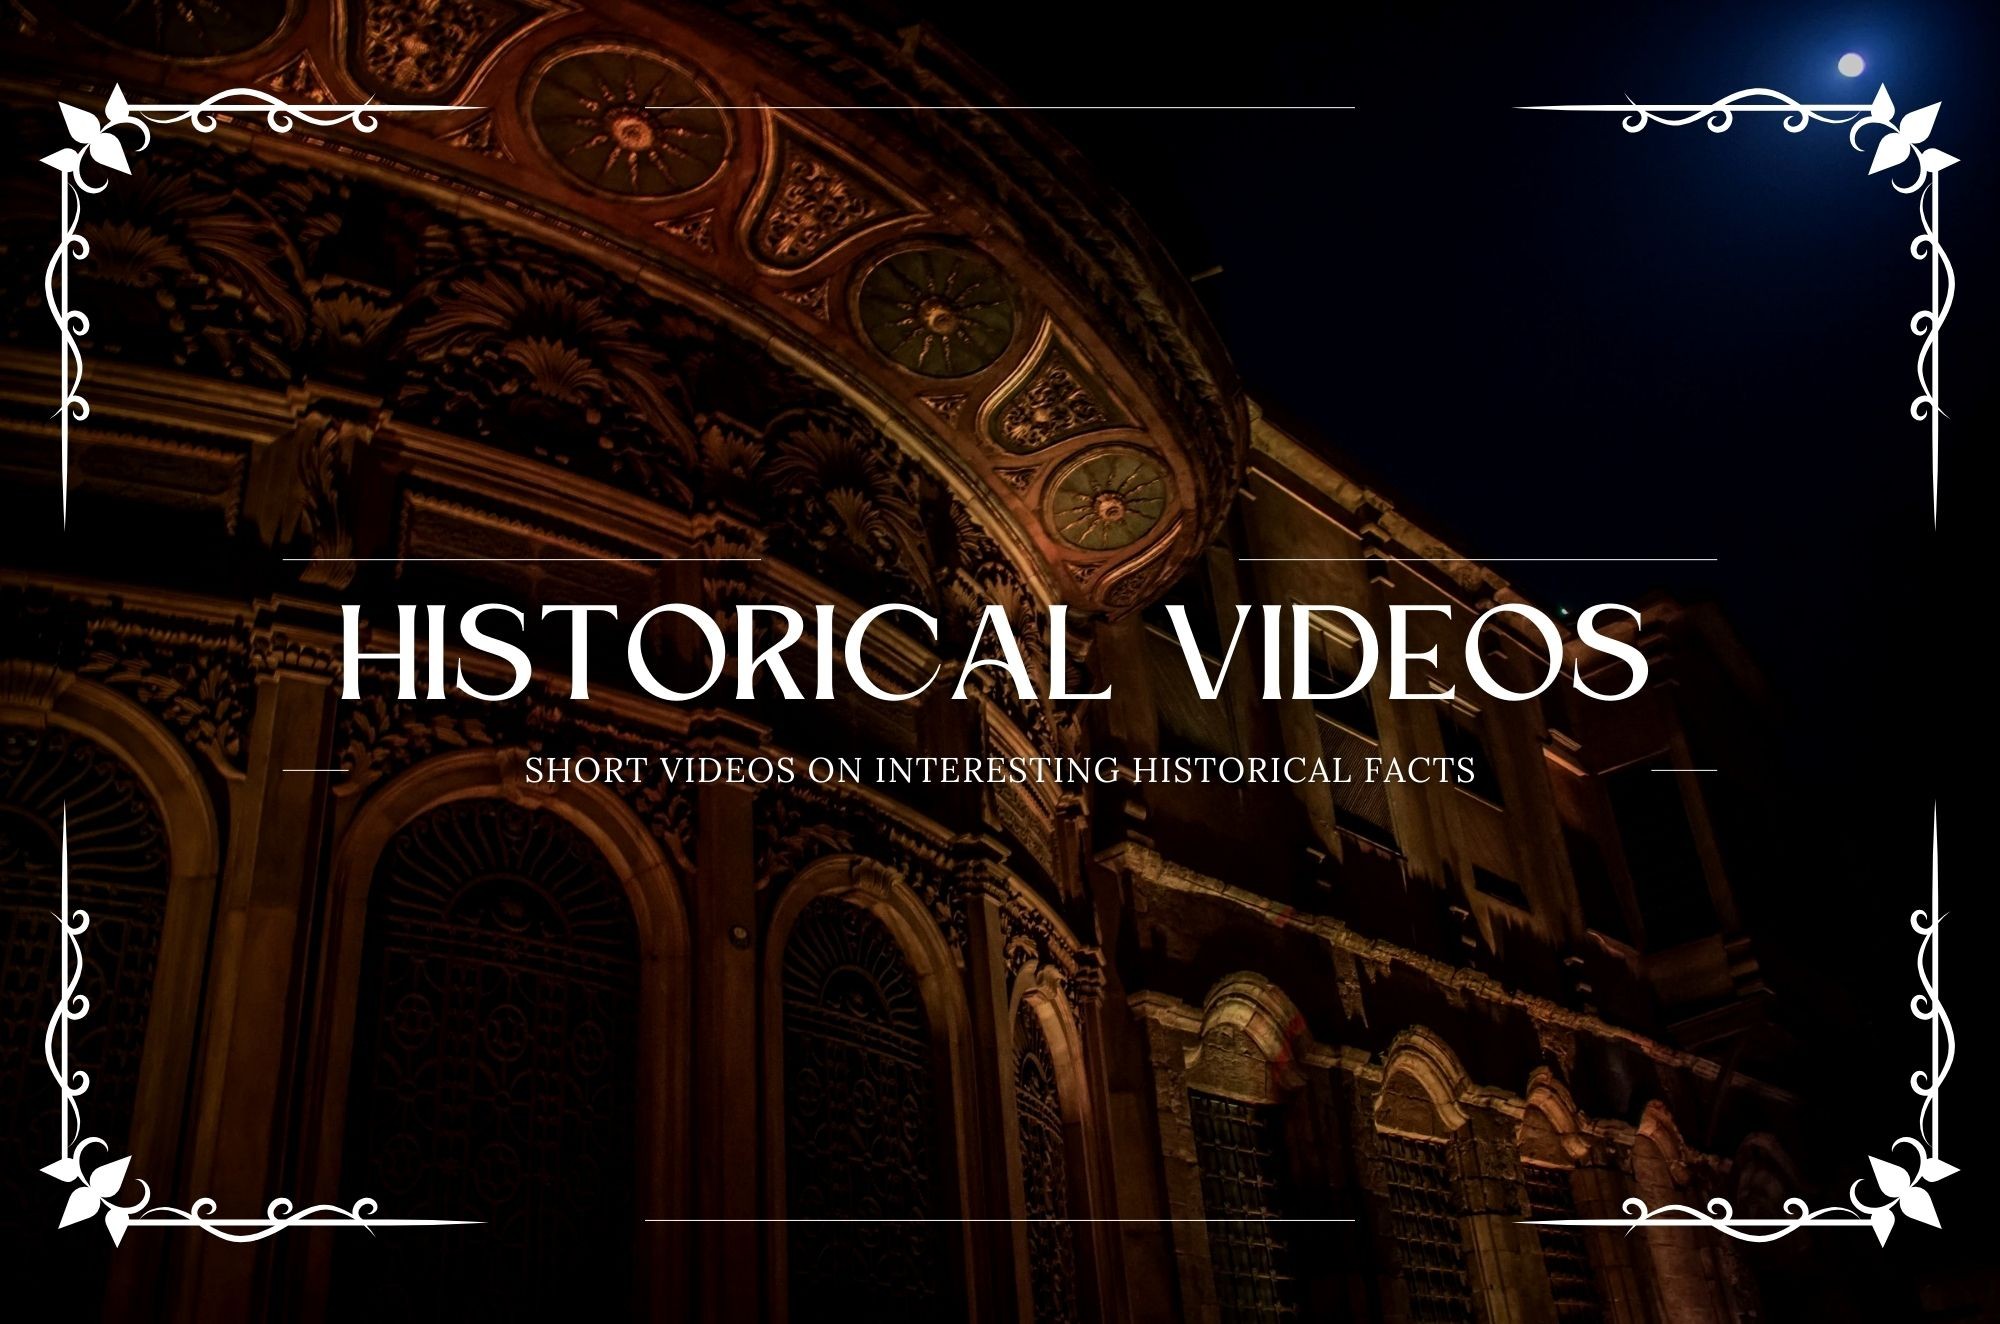 Historical fact videos